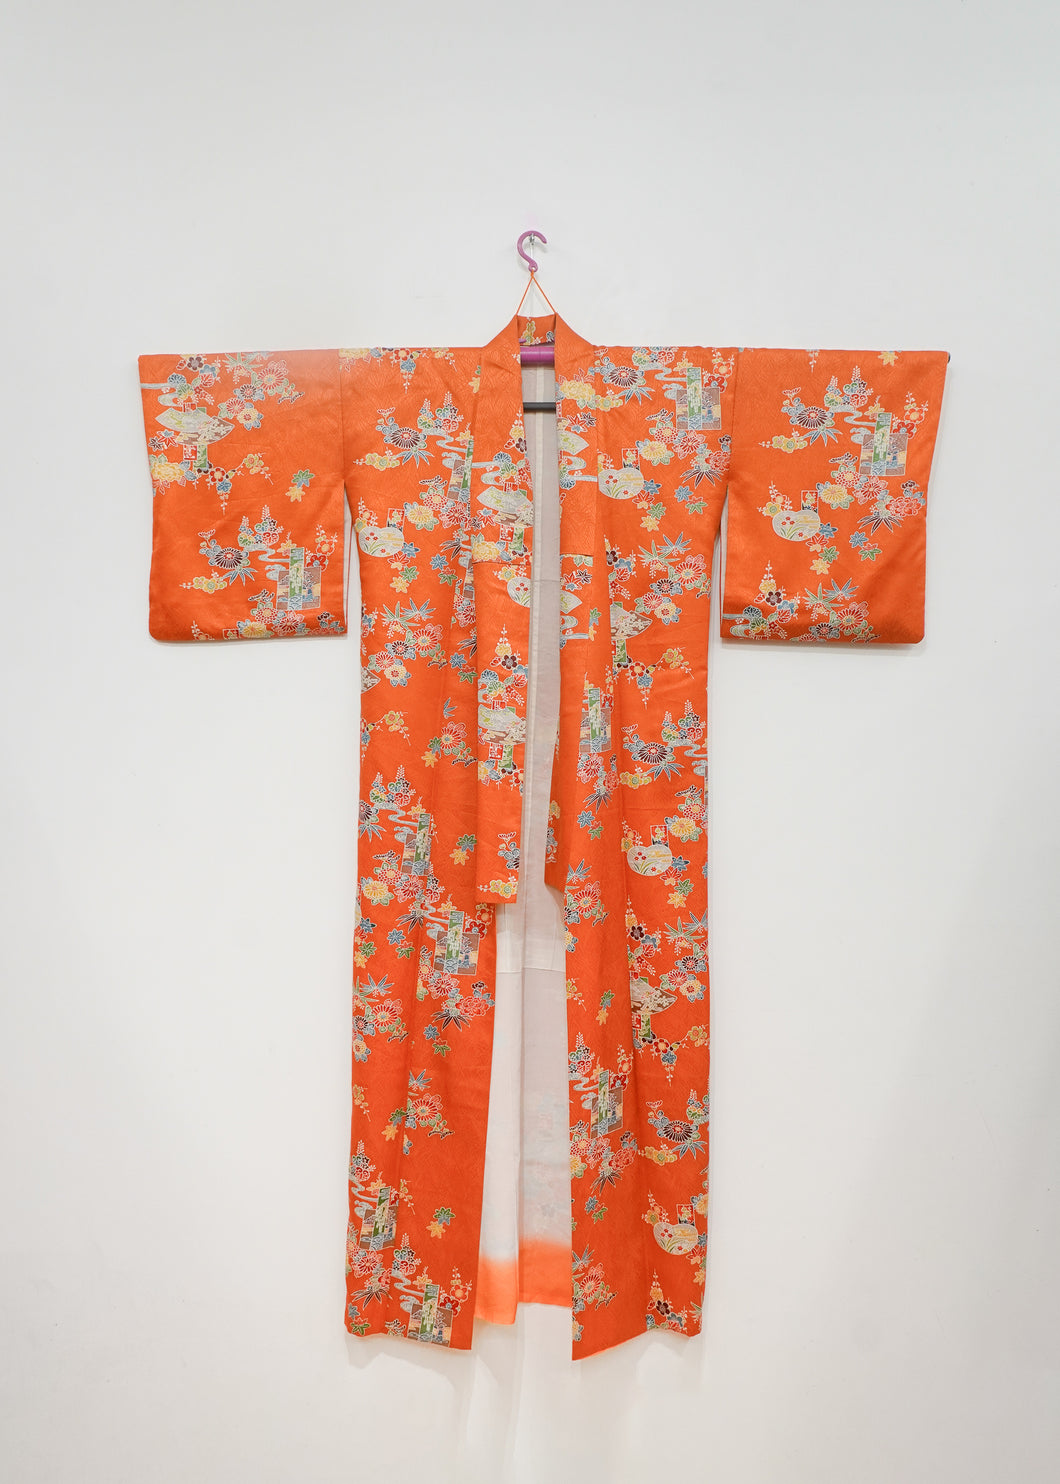 Kimono orange aux motifs traditionnels japonais